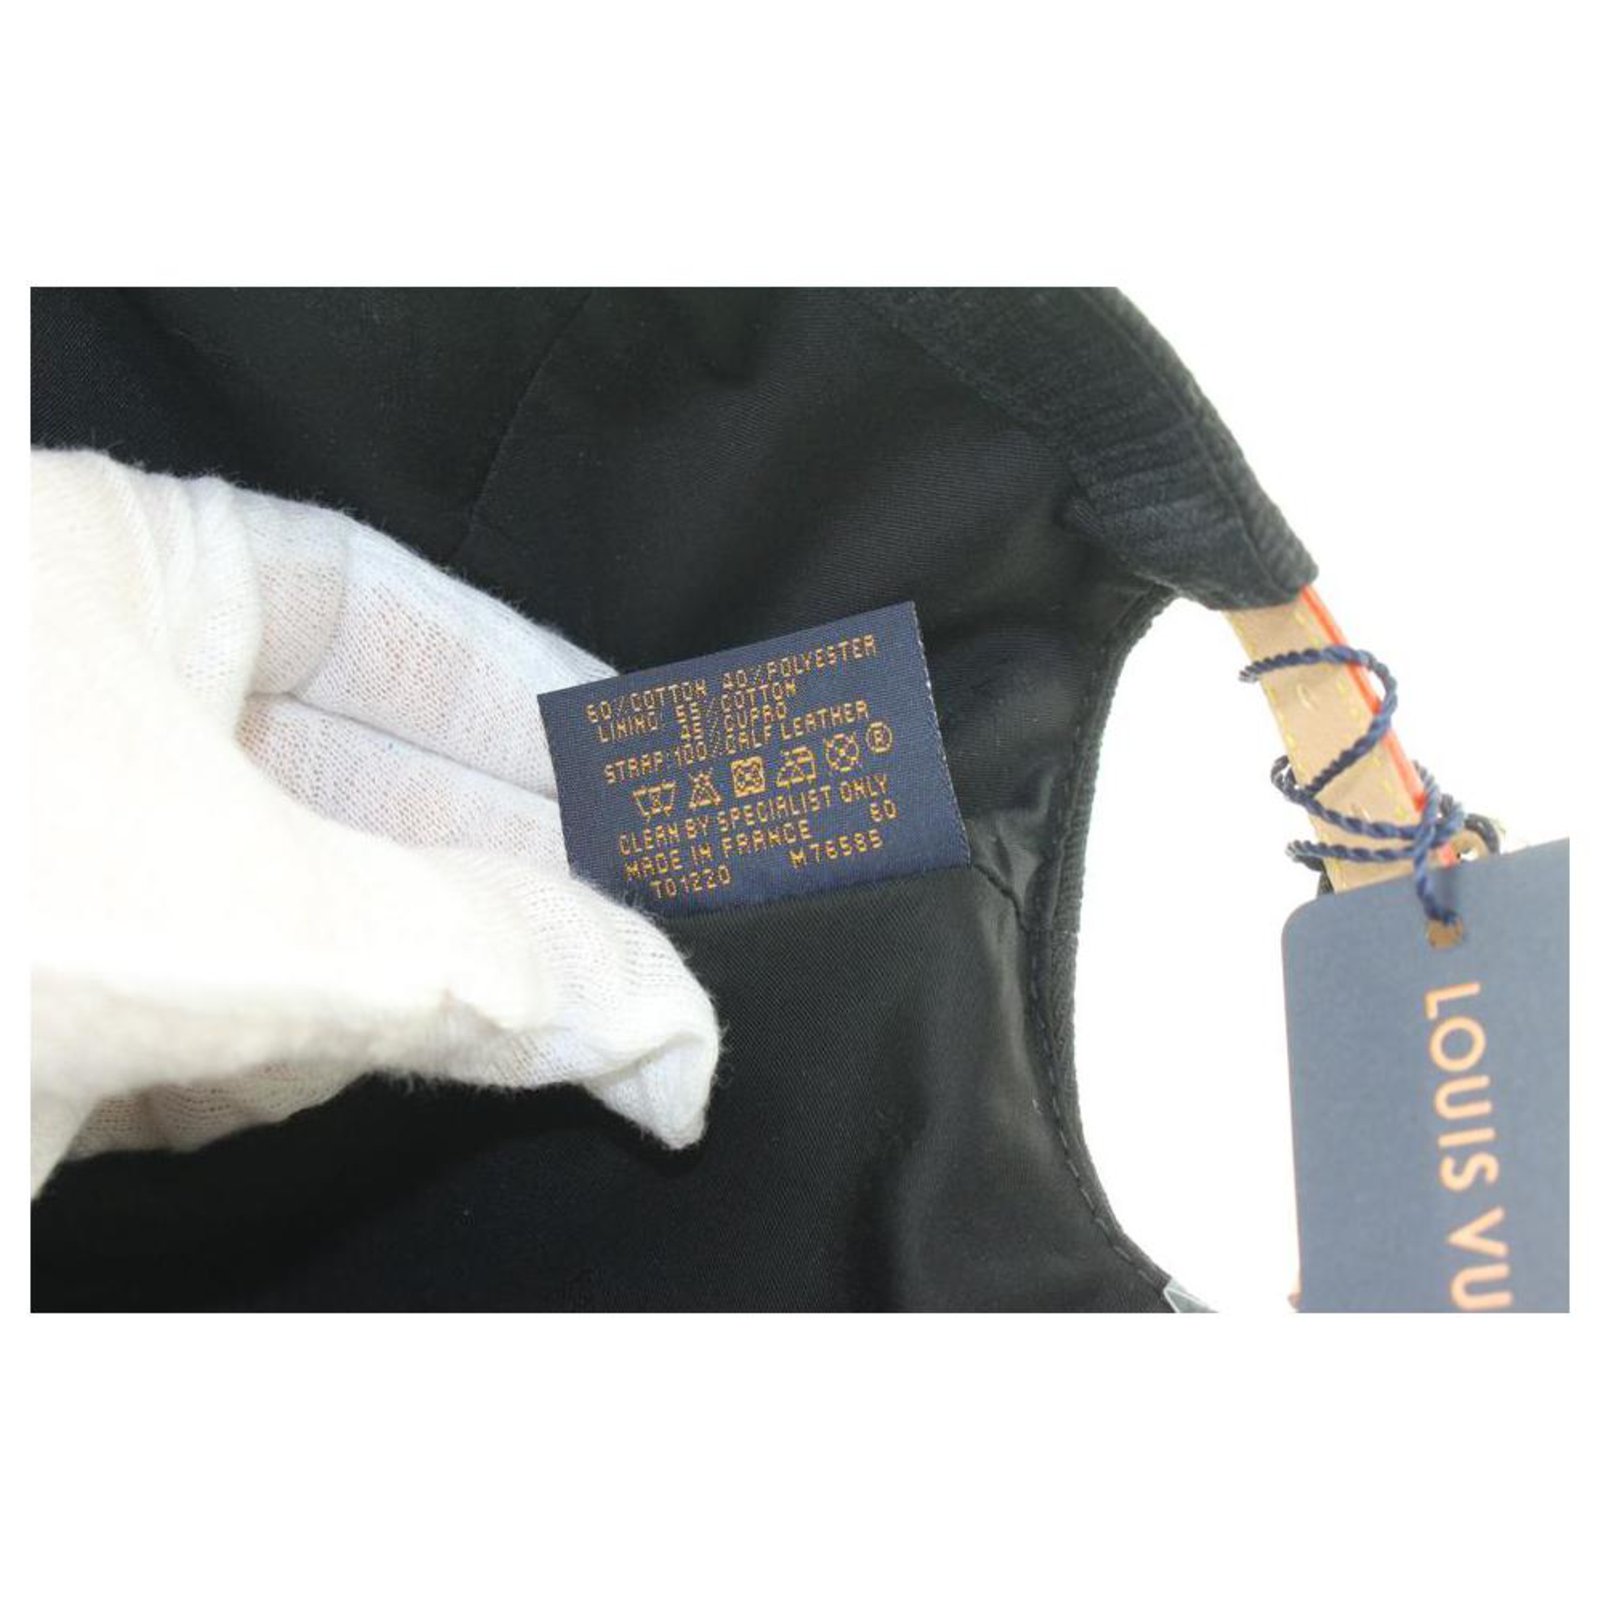 Louis Vuitton Monogram Essential Cap Black Cotton. Size 60